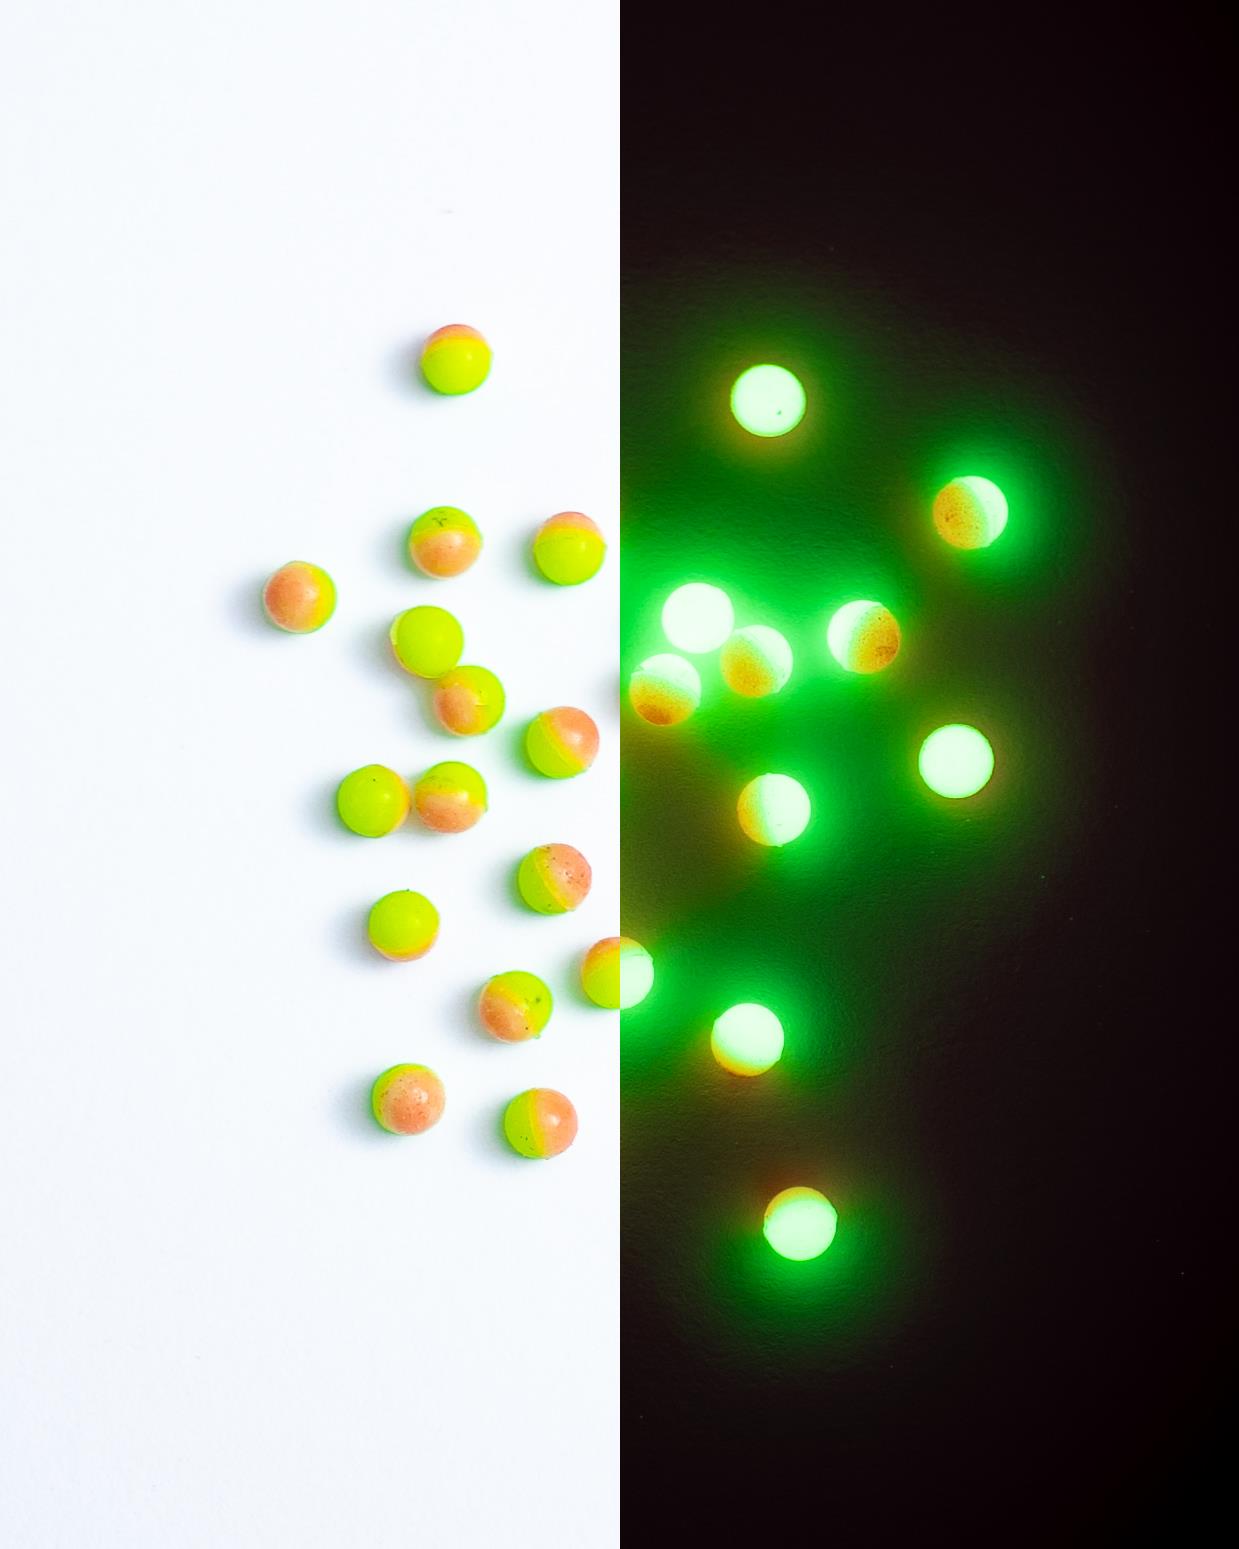 Inova Hi-Vis Duo Round Glow Beads